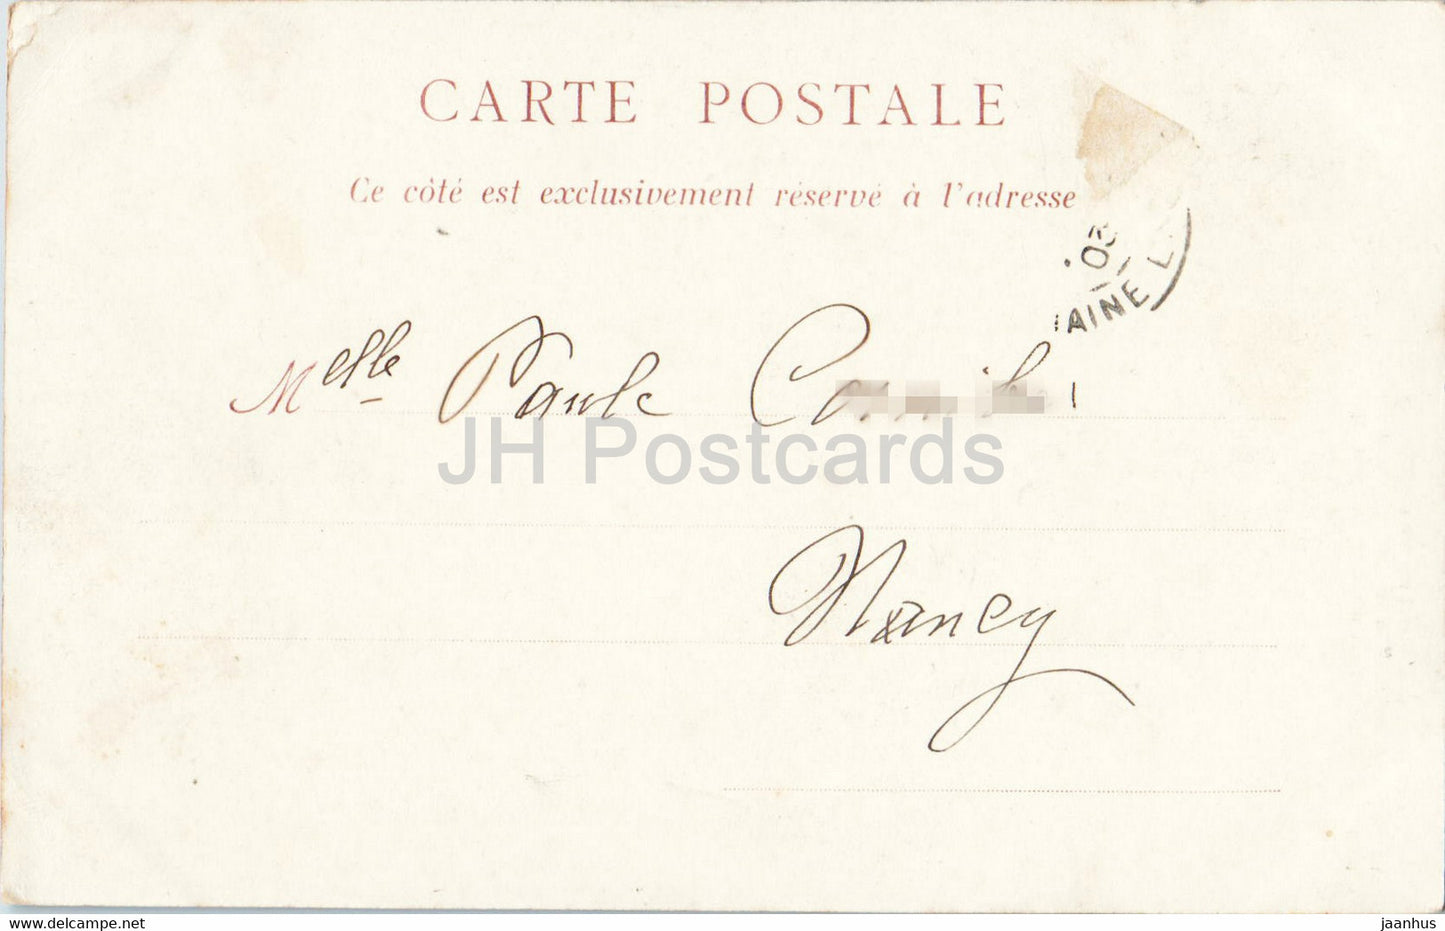 Angers - Ponts de Ce et environs - femme - costumes folkloriques - carte postale ancienne - 1903 - France - occasion